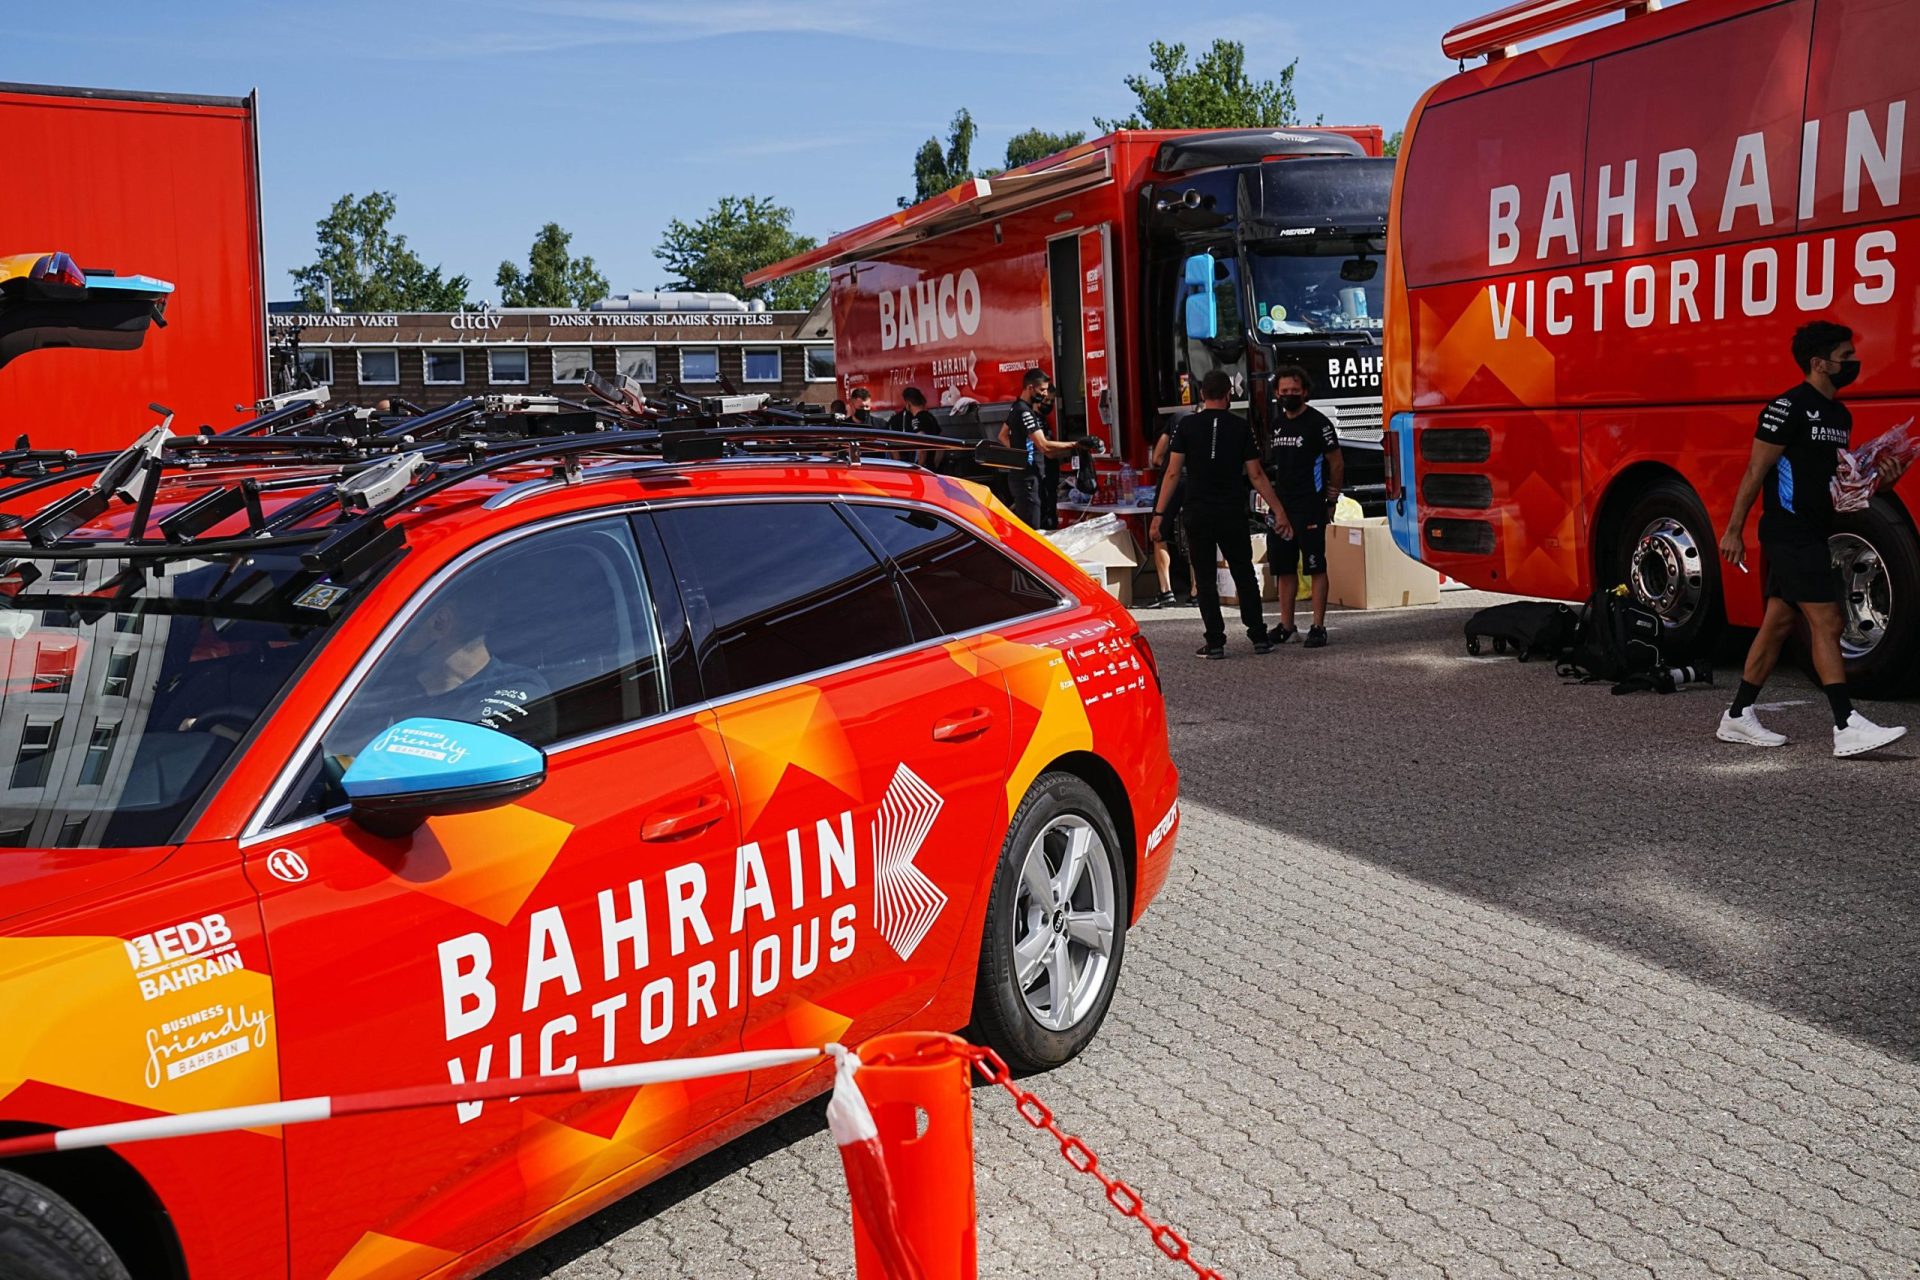 La policía europea hace una redada en el equipo ciclista de Bahrein y se incauta de pruebas